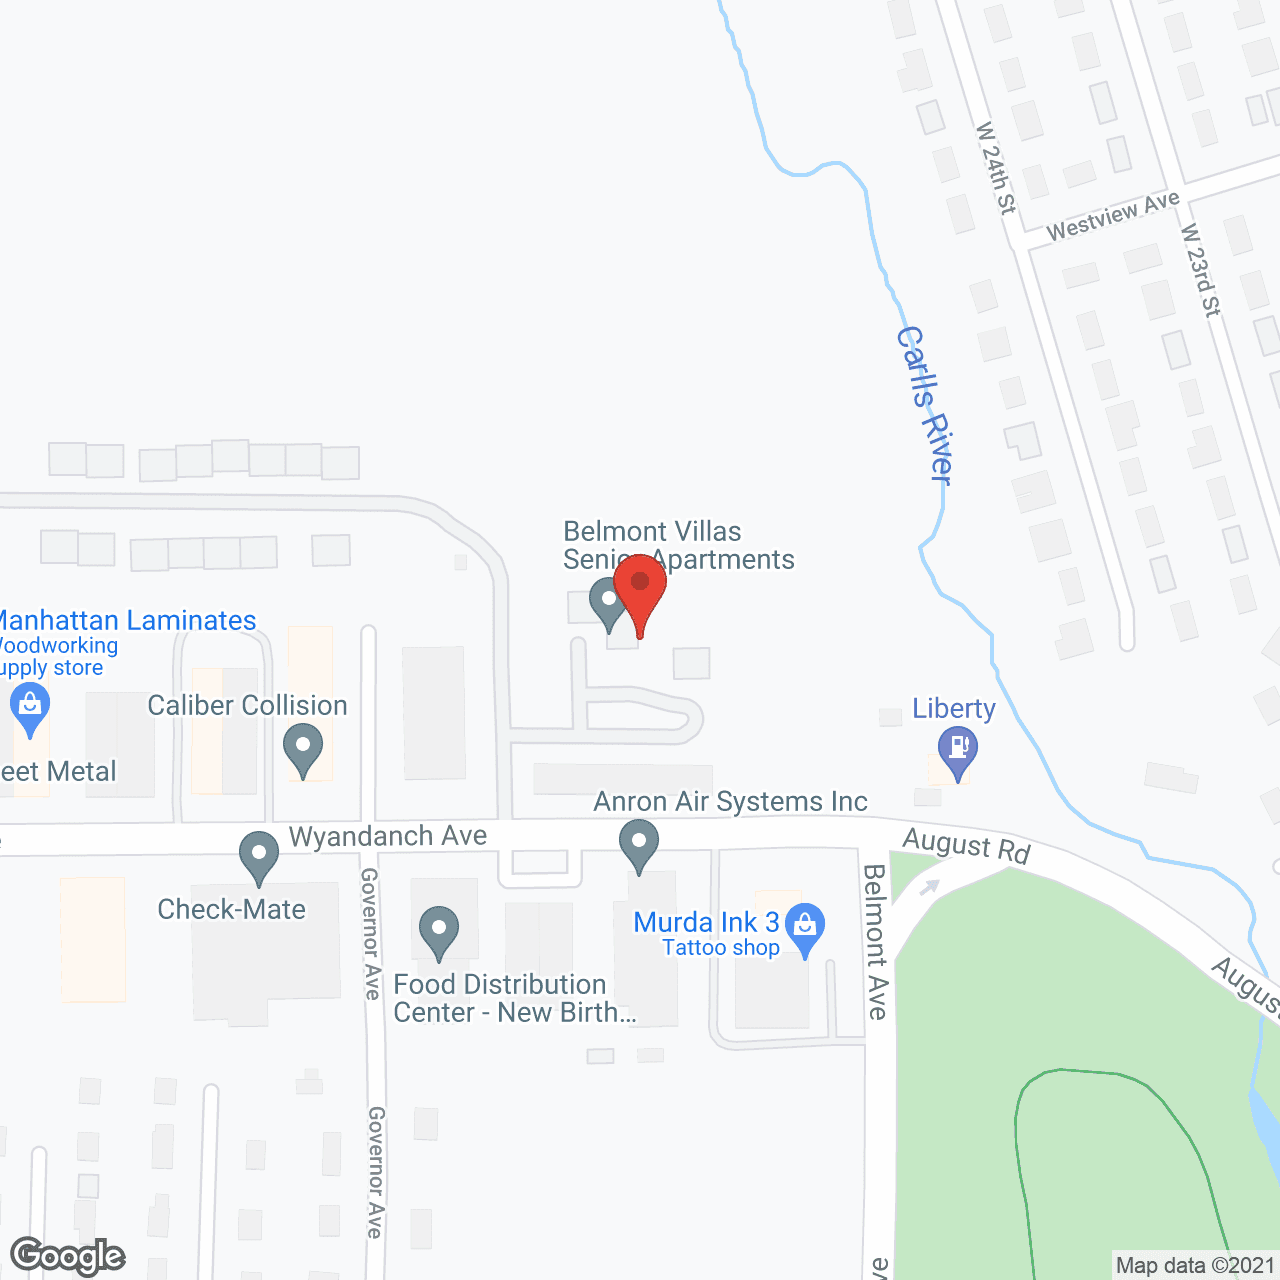 Belmont Villas in google map